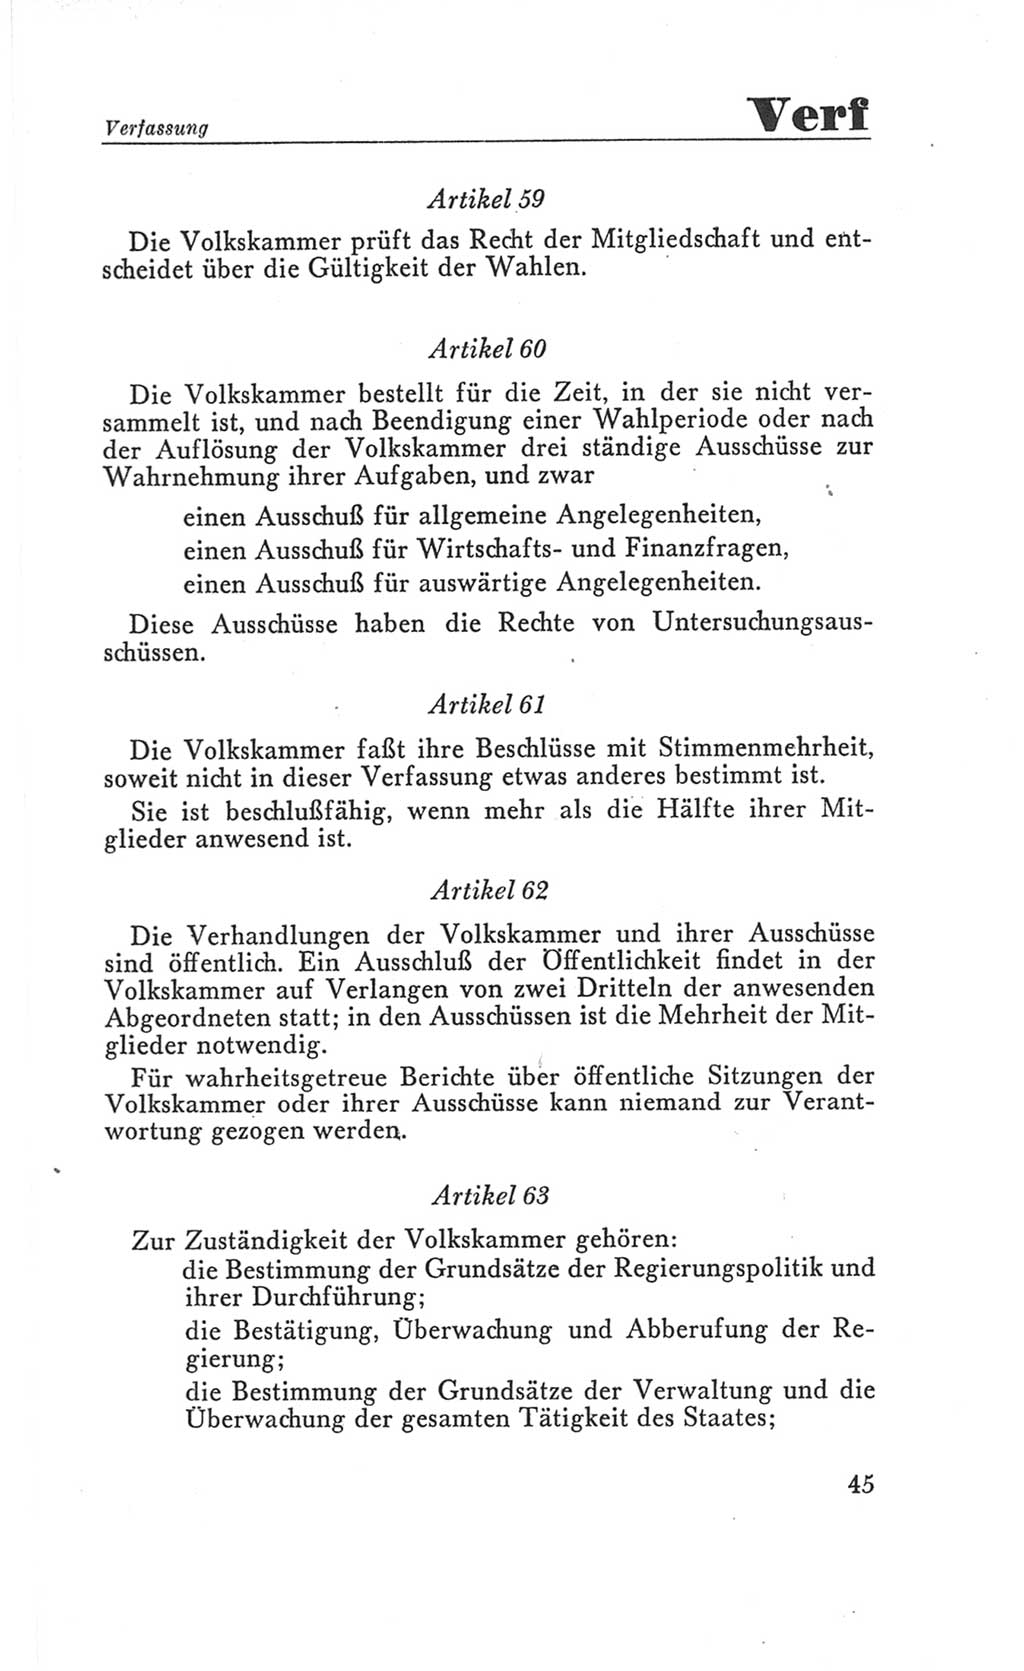 Handbuch der Volkskammer (VK) der Deutschen Demokratischen Republik (DDR), 3. Wahlperiode 1958-1963, Seite 45 (Hdb. VK. DDR 3. WP. 1958-1963, S. 45)